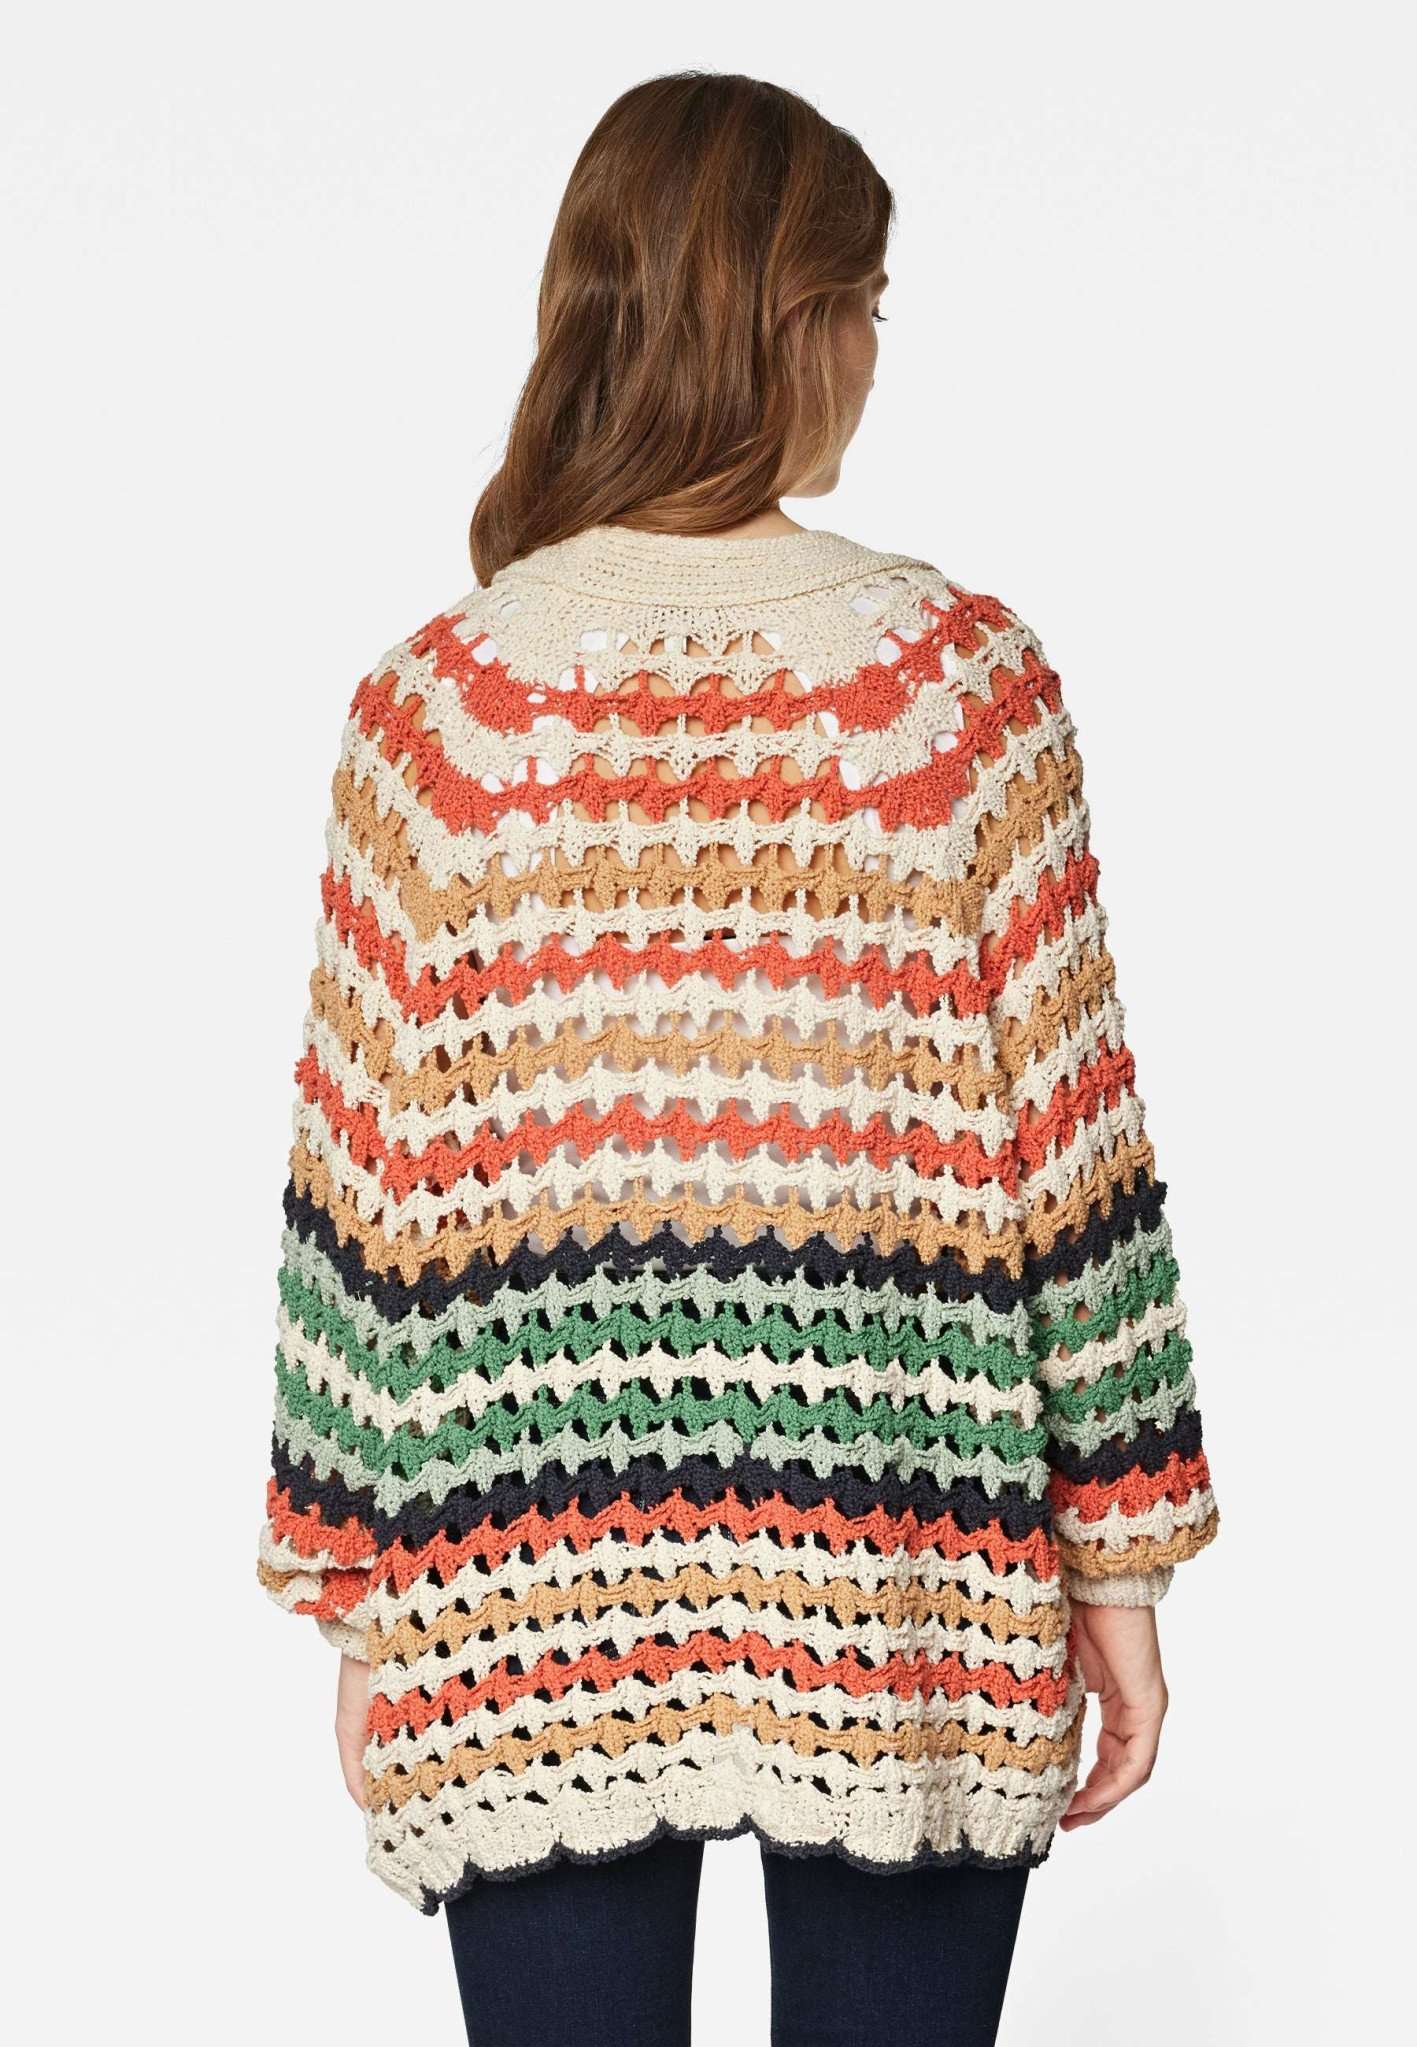 Colorful Striped Sweater in Colorful Striped Pullover Mavi   